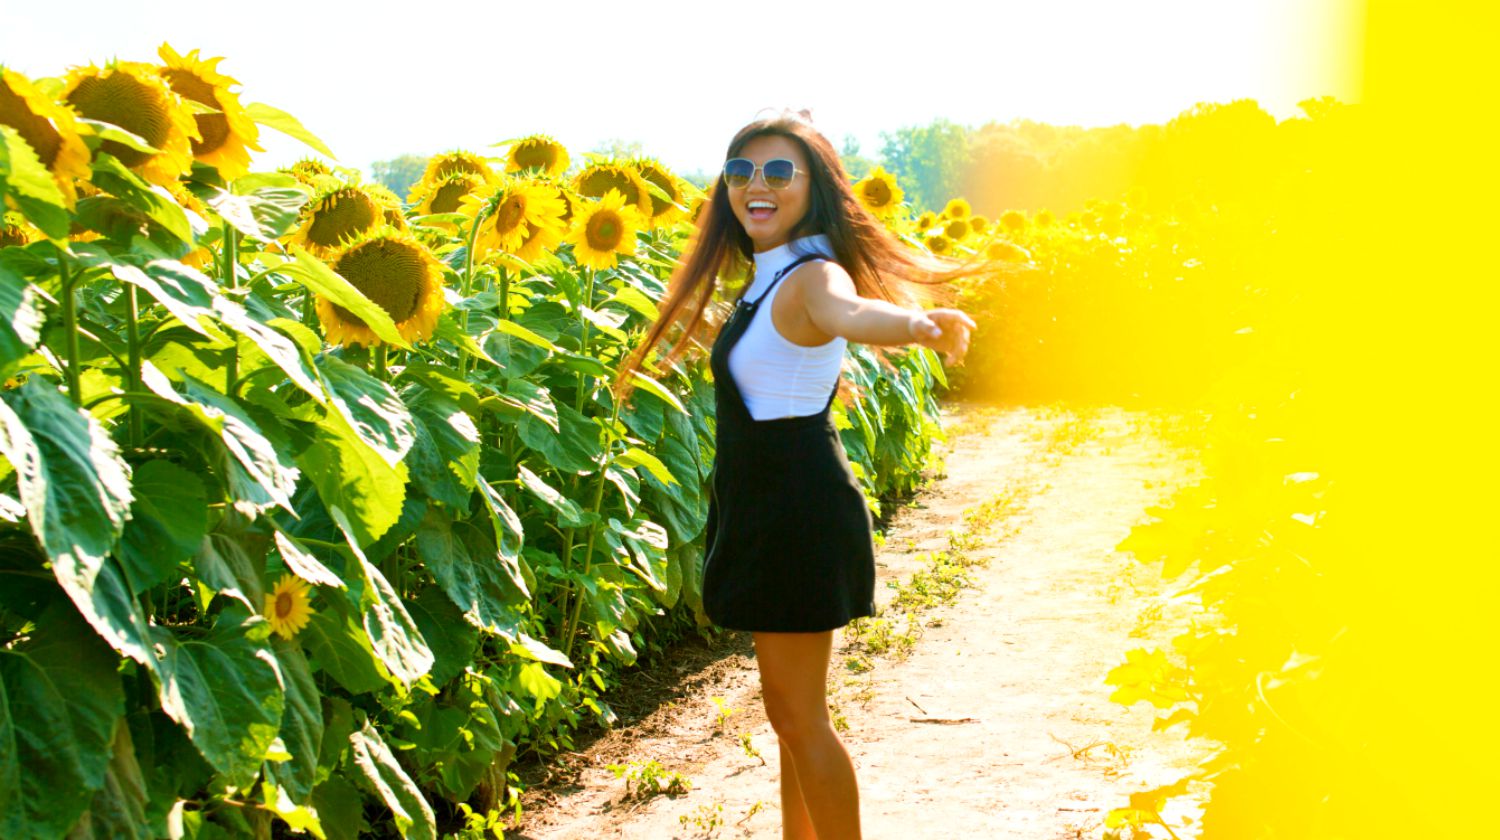 ویژگی |  زنی در مزرعه آفتابگردان با لبخند شاد |  لباس های DIY ارزان |  پروژه های مد